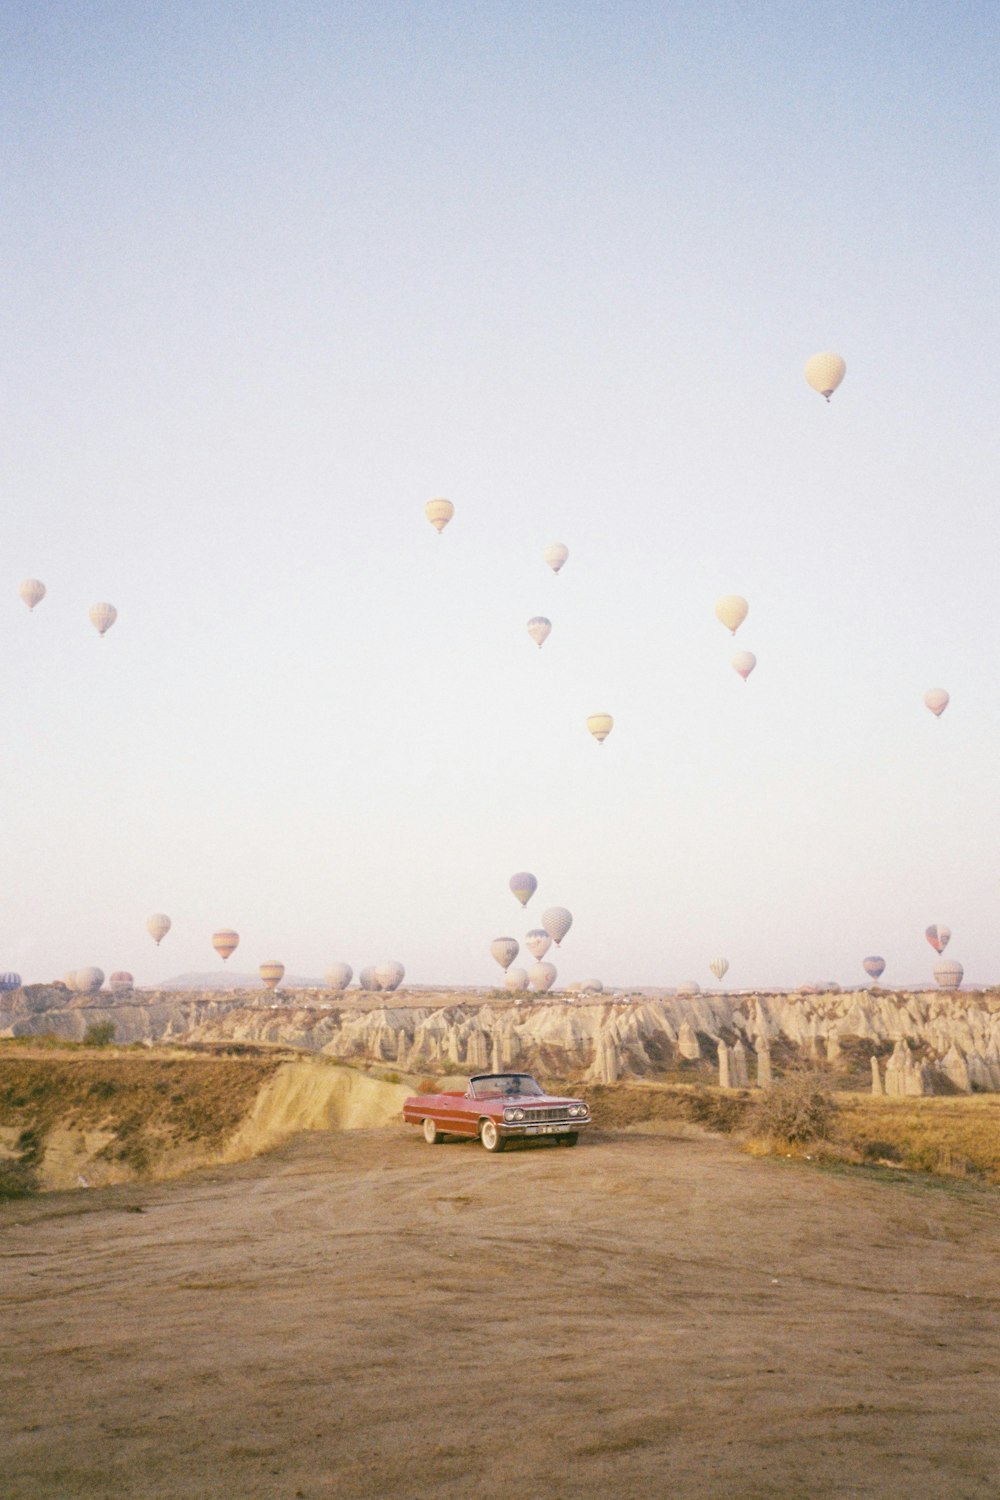 a car driving through a field of hot air balloons